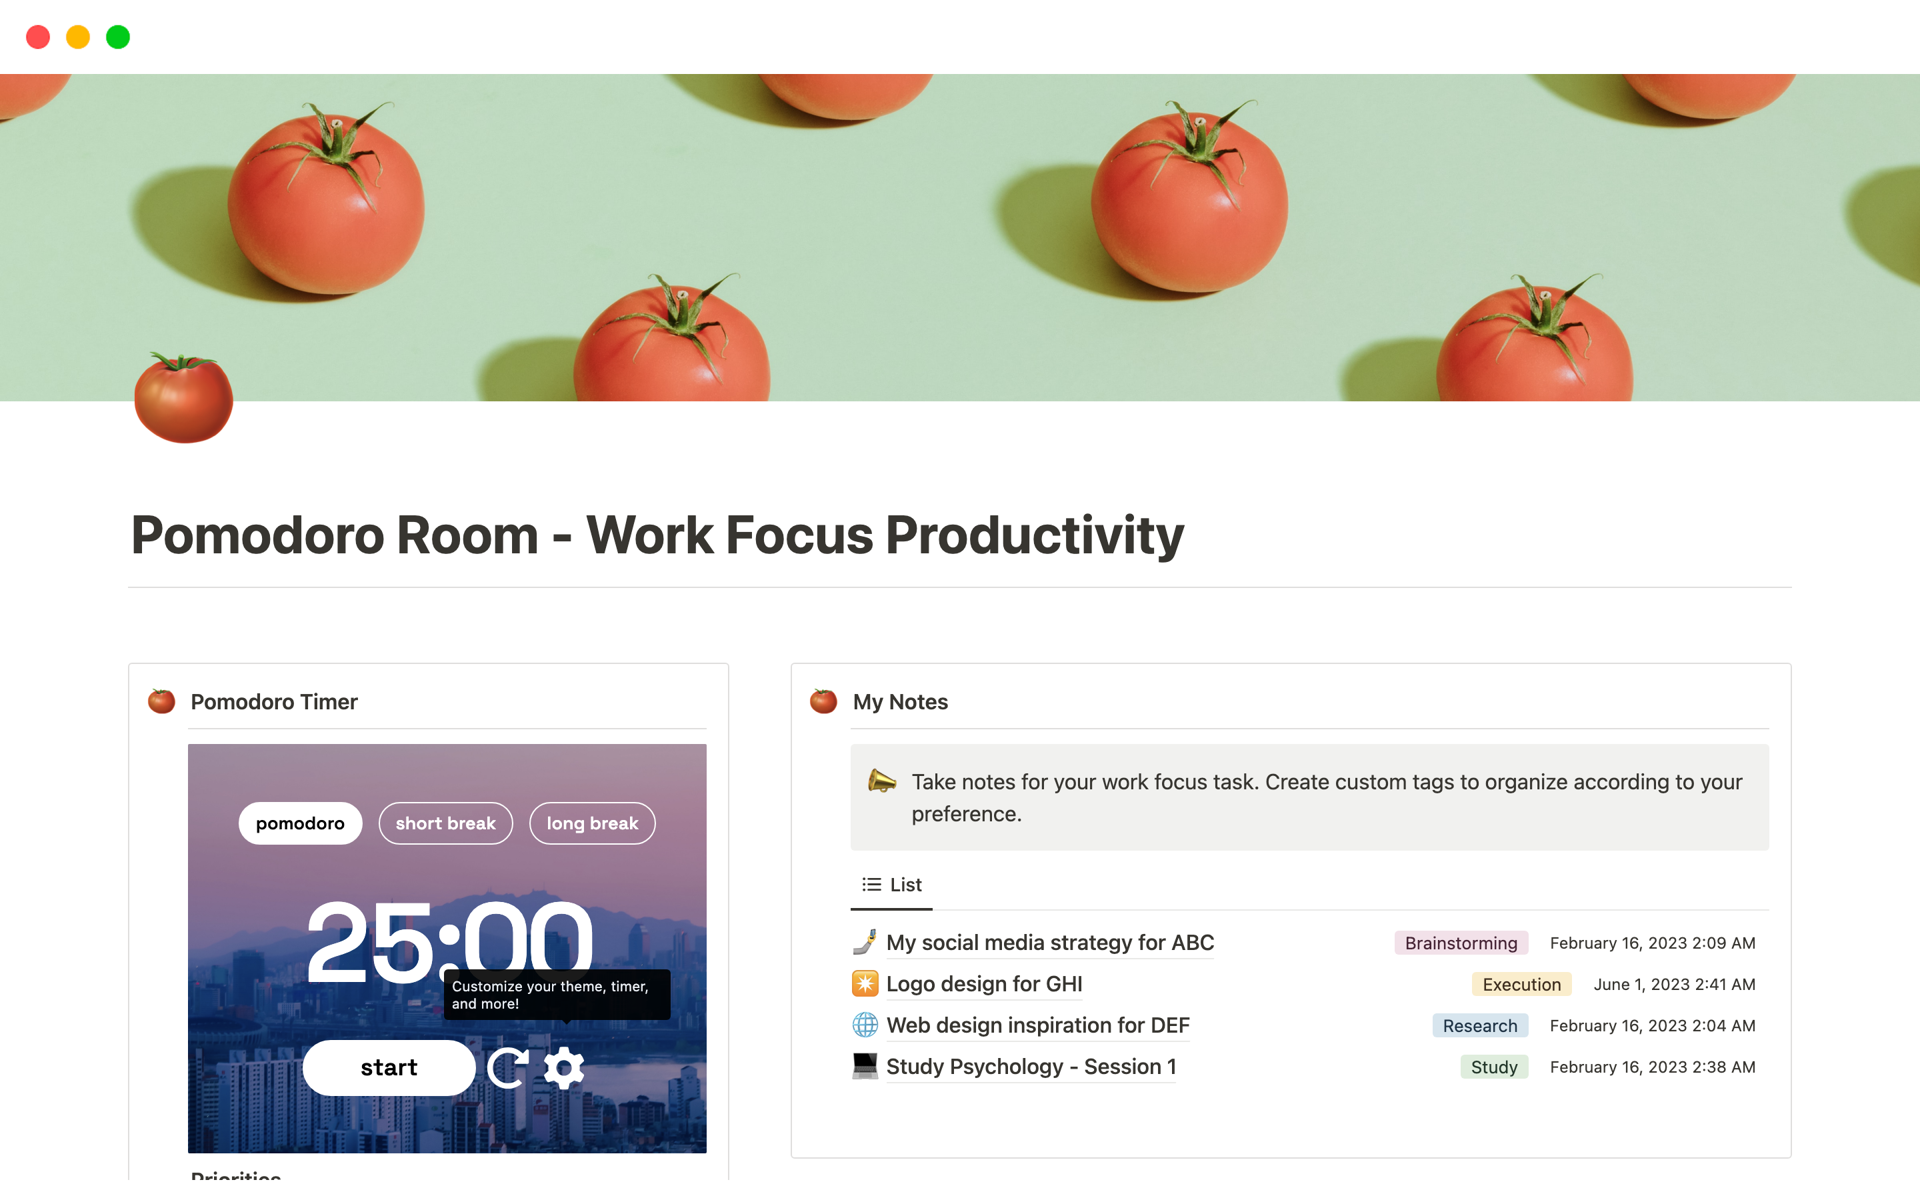 En förhandsgranskning av mallen för Pomodoro Room - Work Focus Productivity